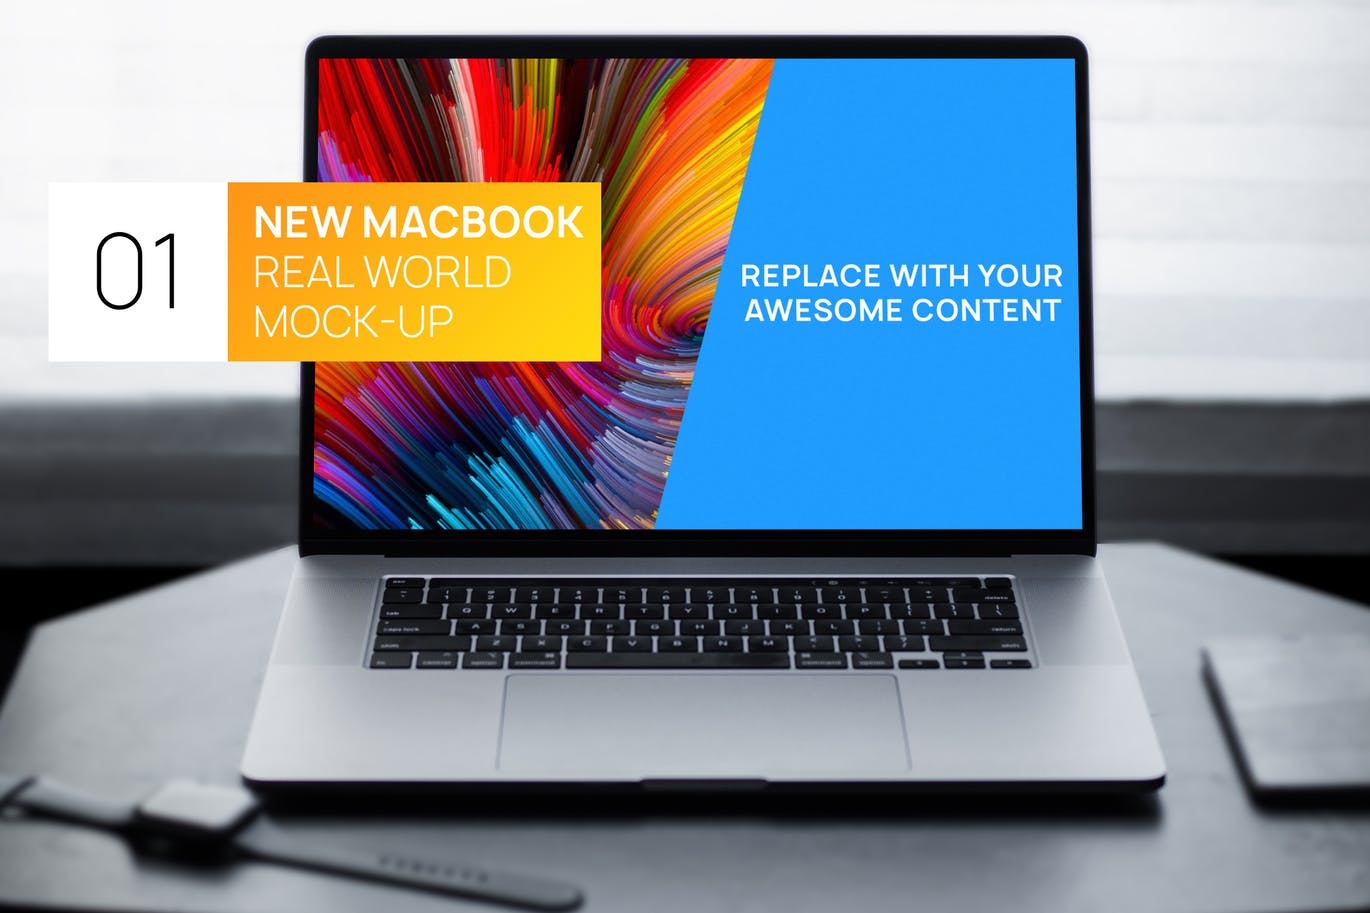 简约风格灰黑场景MacBook电脑屏幕演示大洋岛精选样机 New MacBook Touchbar Dark Photo Real World Mock-up插图